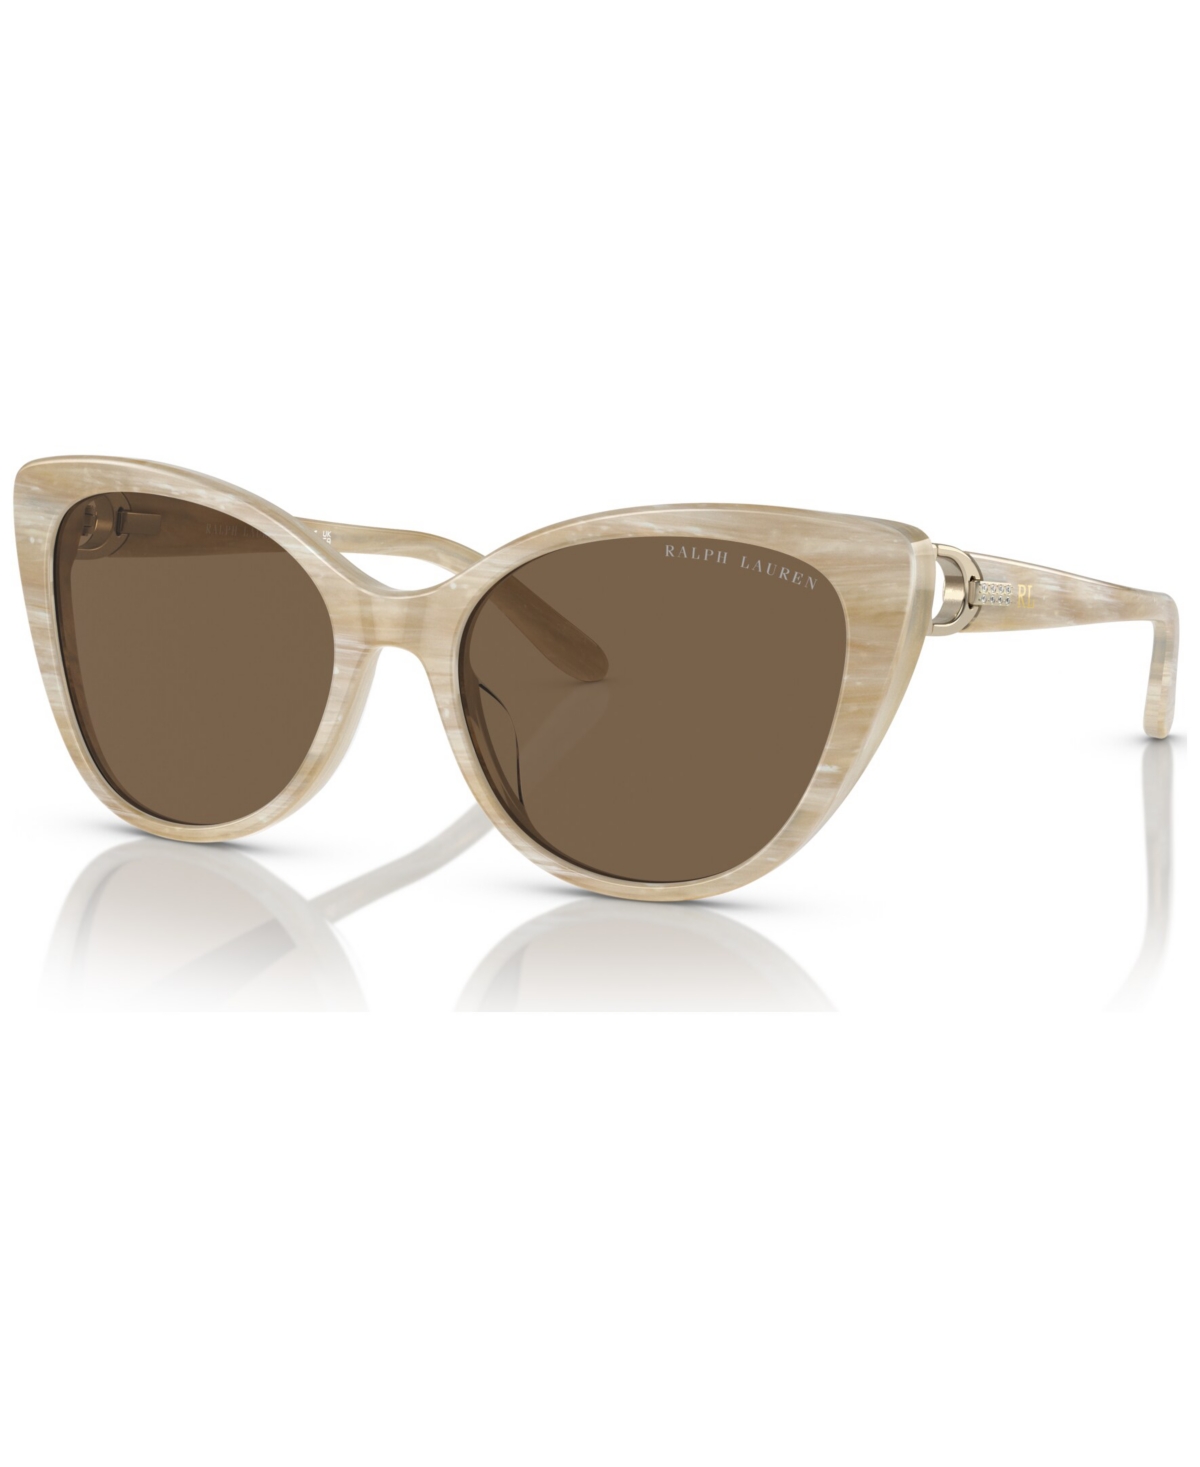 Ralph Lauren Women's Sunglasses, Rl8215bu In Brown